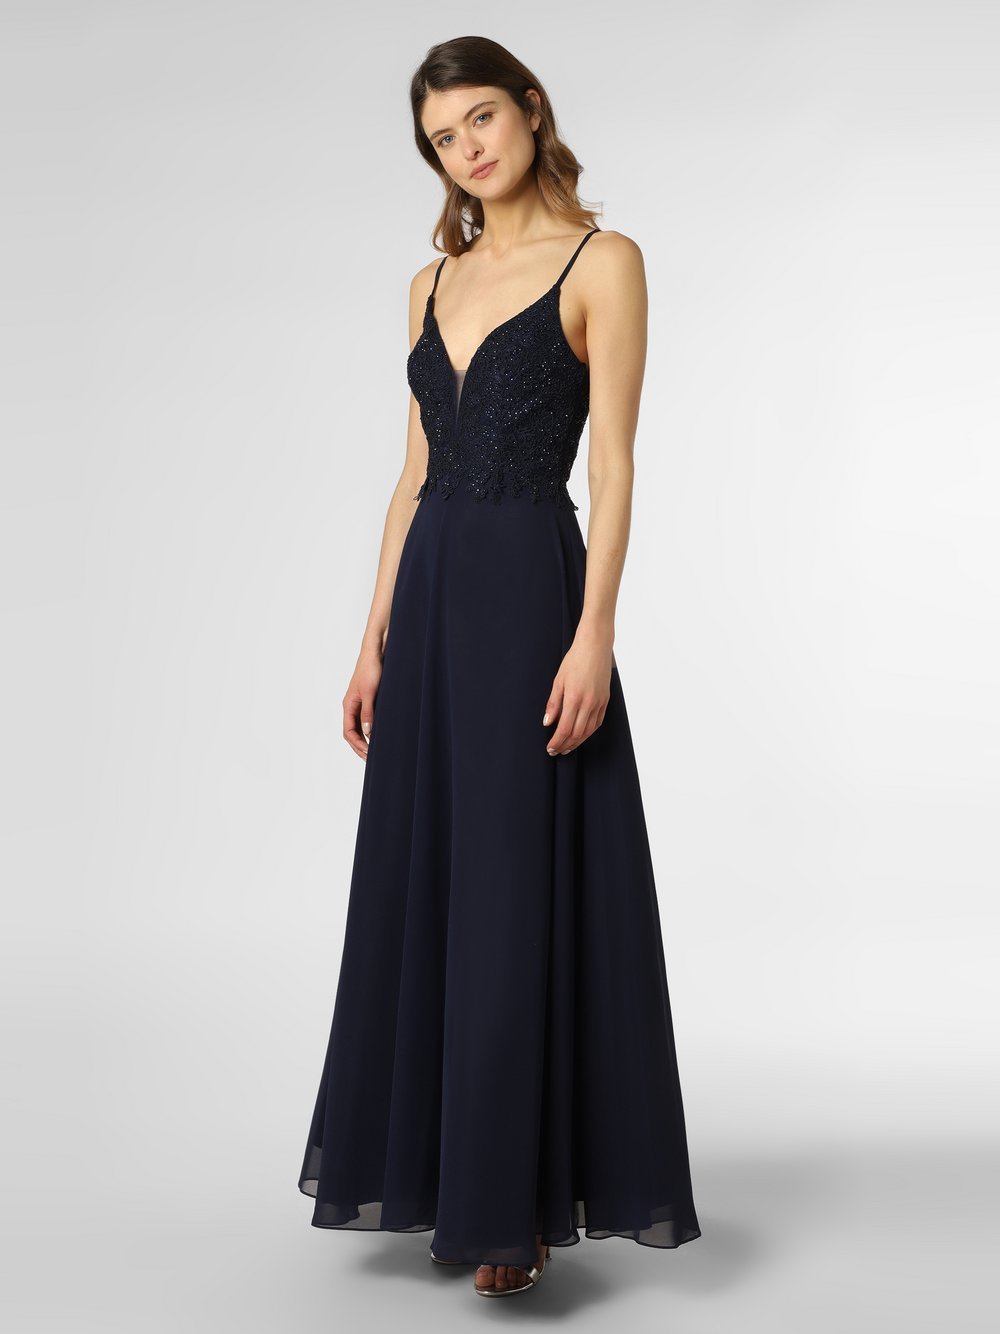 Obraz przedstawiający Luxuar Fashion Damska sukienka wieczorowa Kobiety Szyfon niebieski jednolity, 34